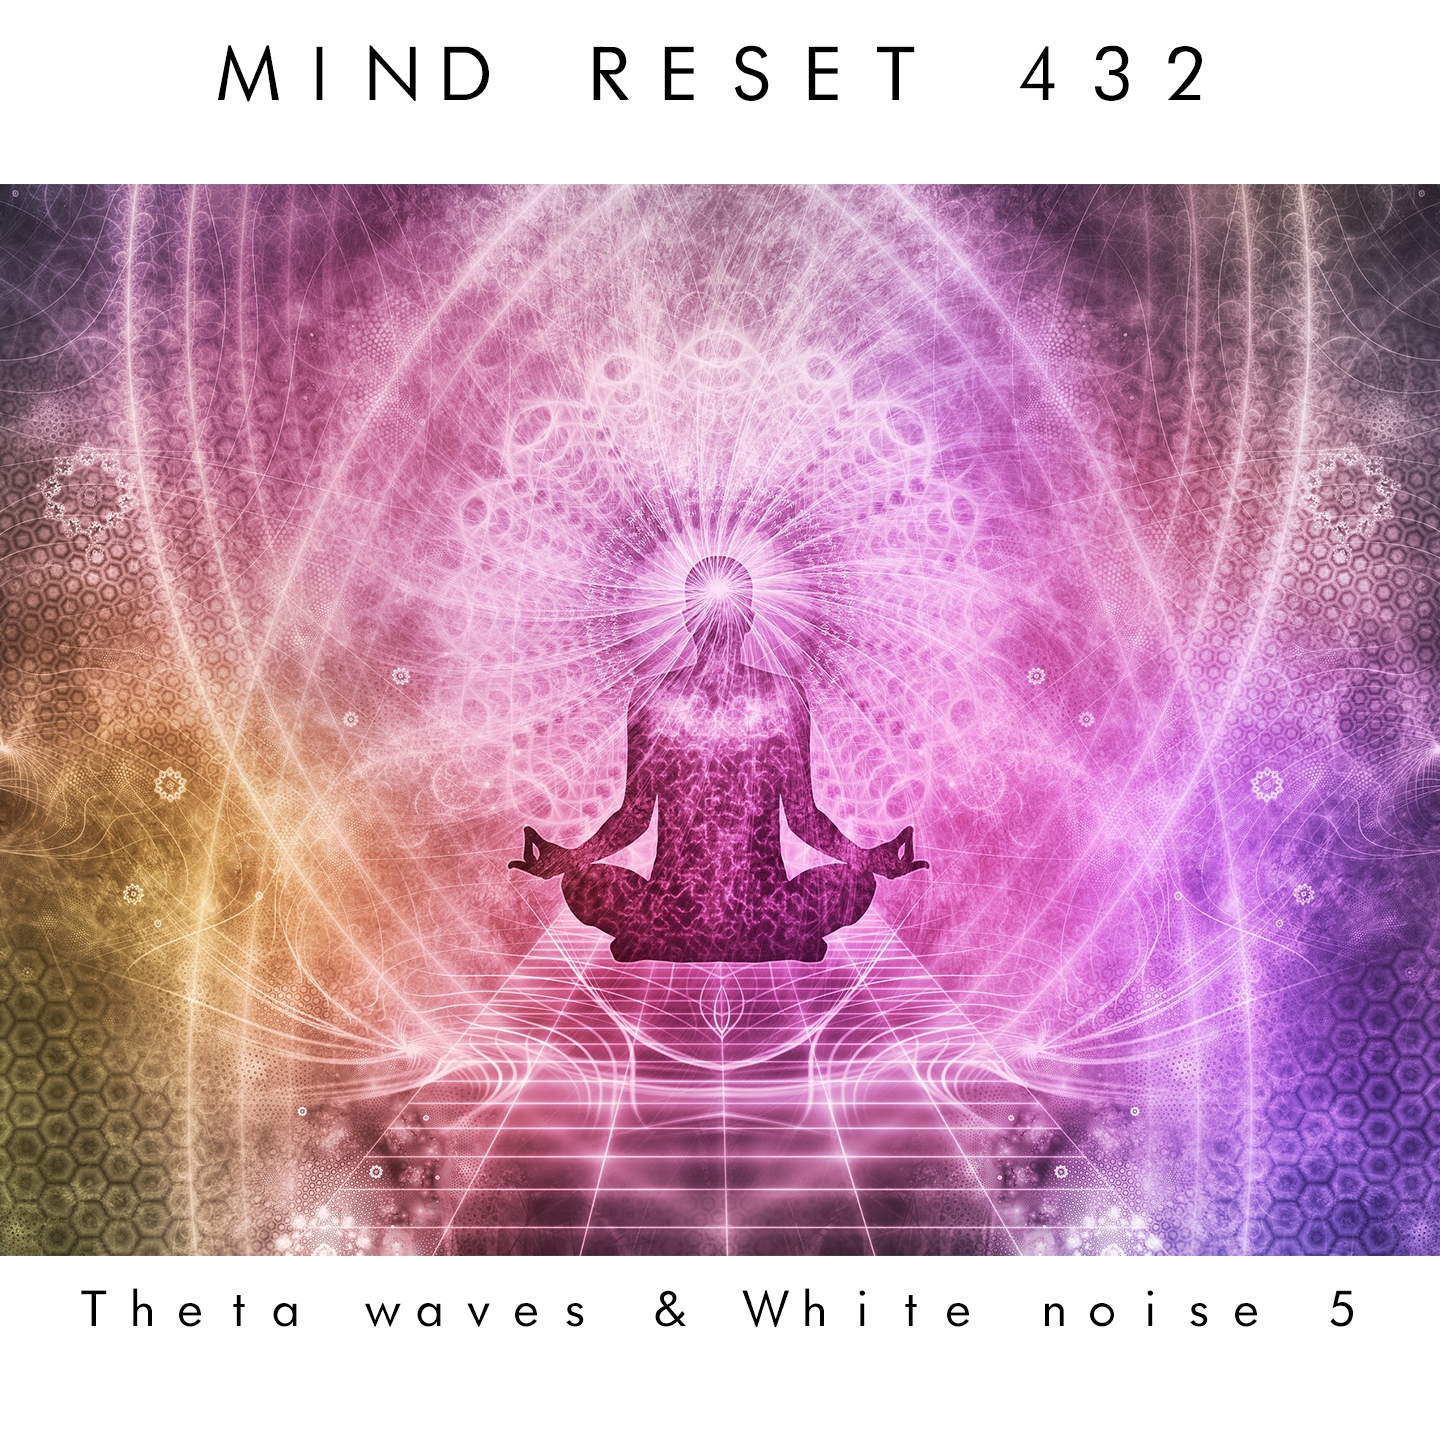 Theta waves & white noise 5